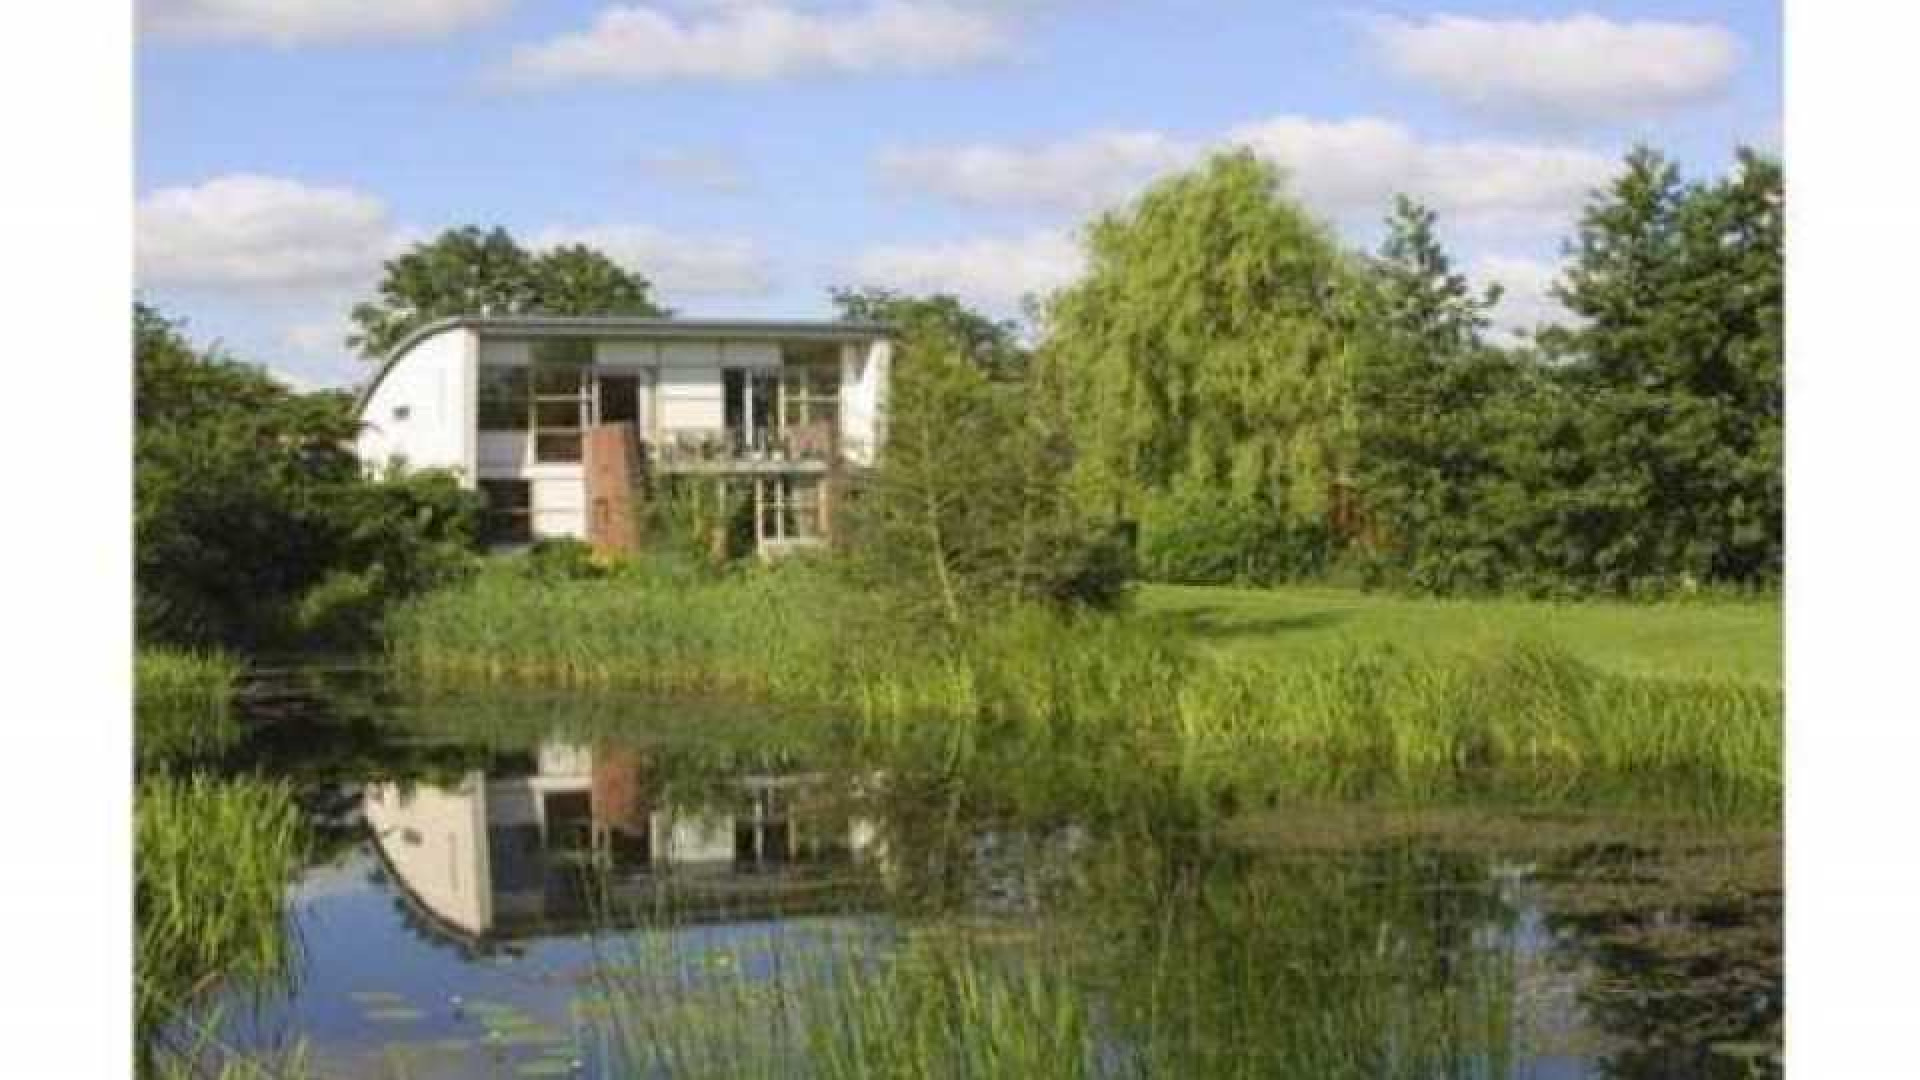 Kim Kotter en Jaap Reesema kopen villa op droomstek. Zie foto's